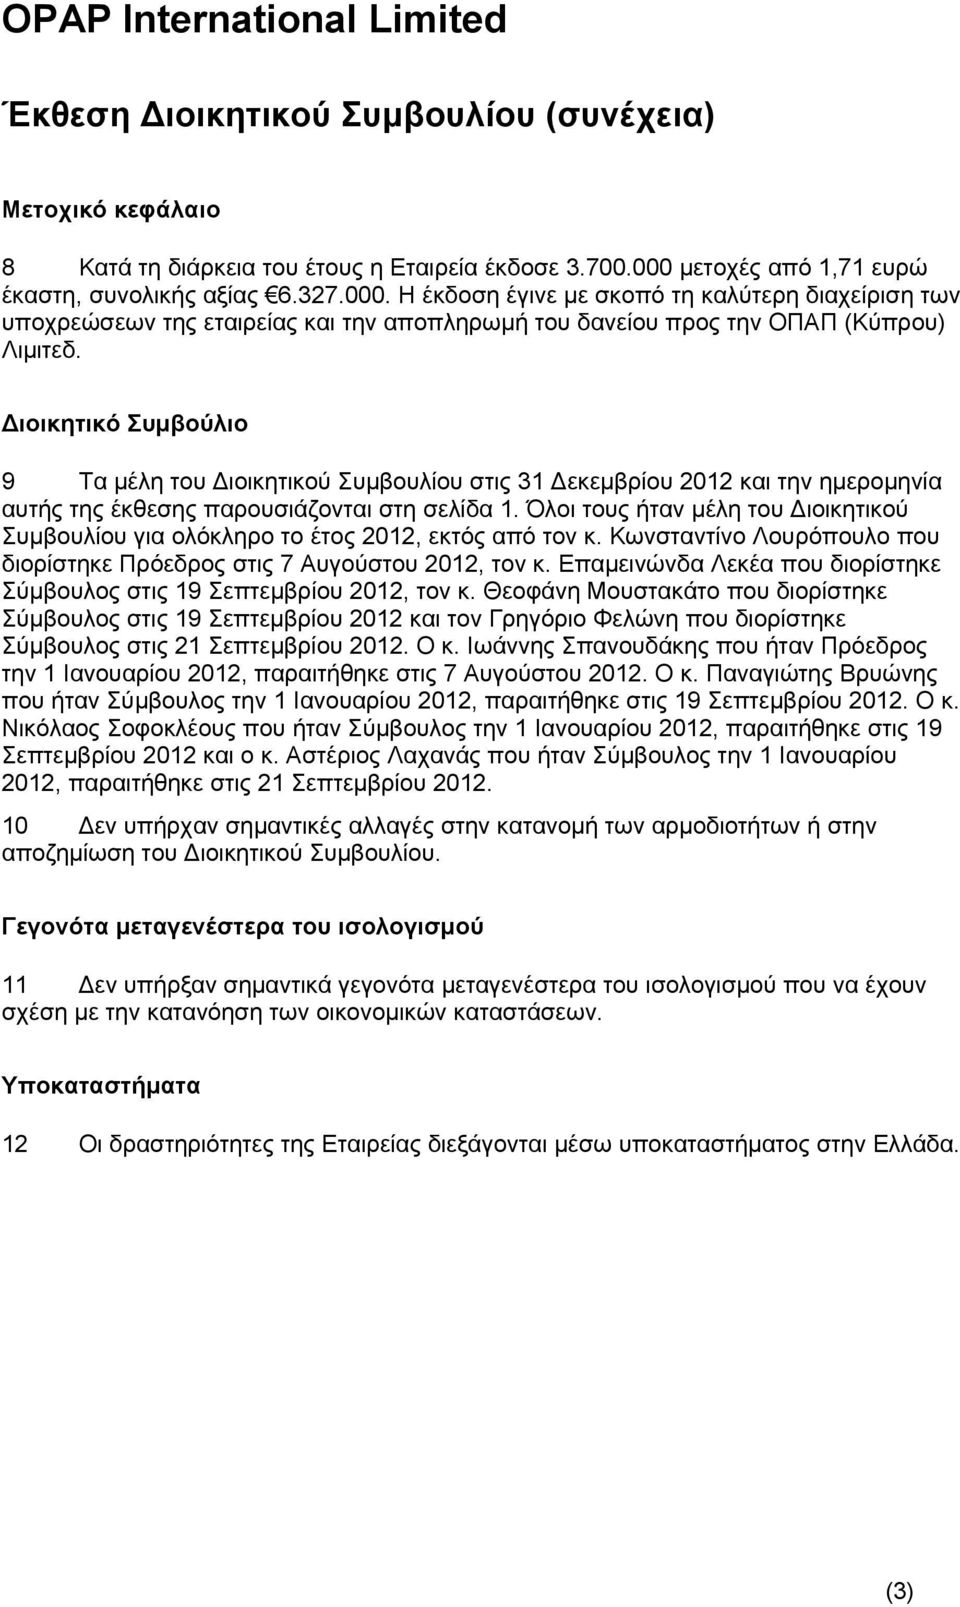 Διοικητικό Συμβούλιο 9 Τα μέλη του Διοικητικού Συμβουλίου στις 31 Δεκεμβρίου 2012 και την ημερομηνία αυτής της έκθεσης παρουσιάζονται στη σελίδα 1.